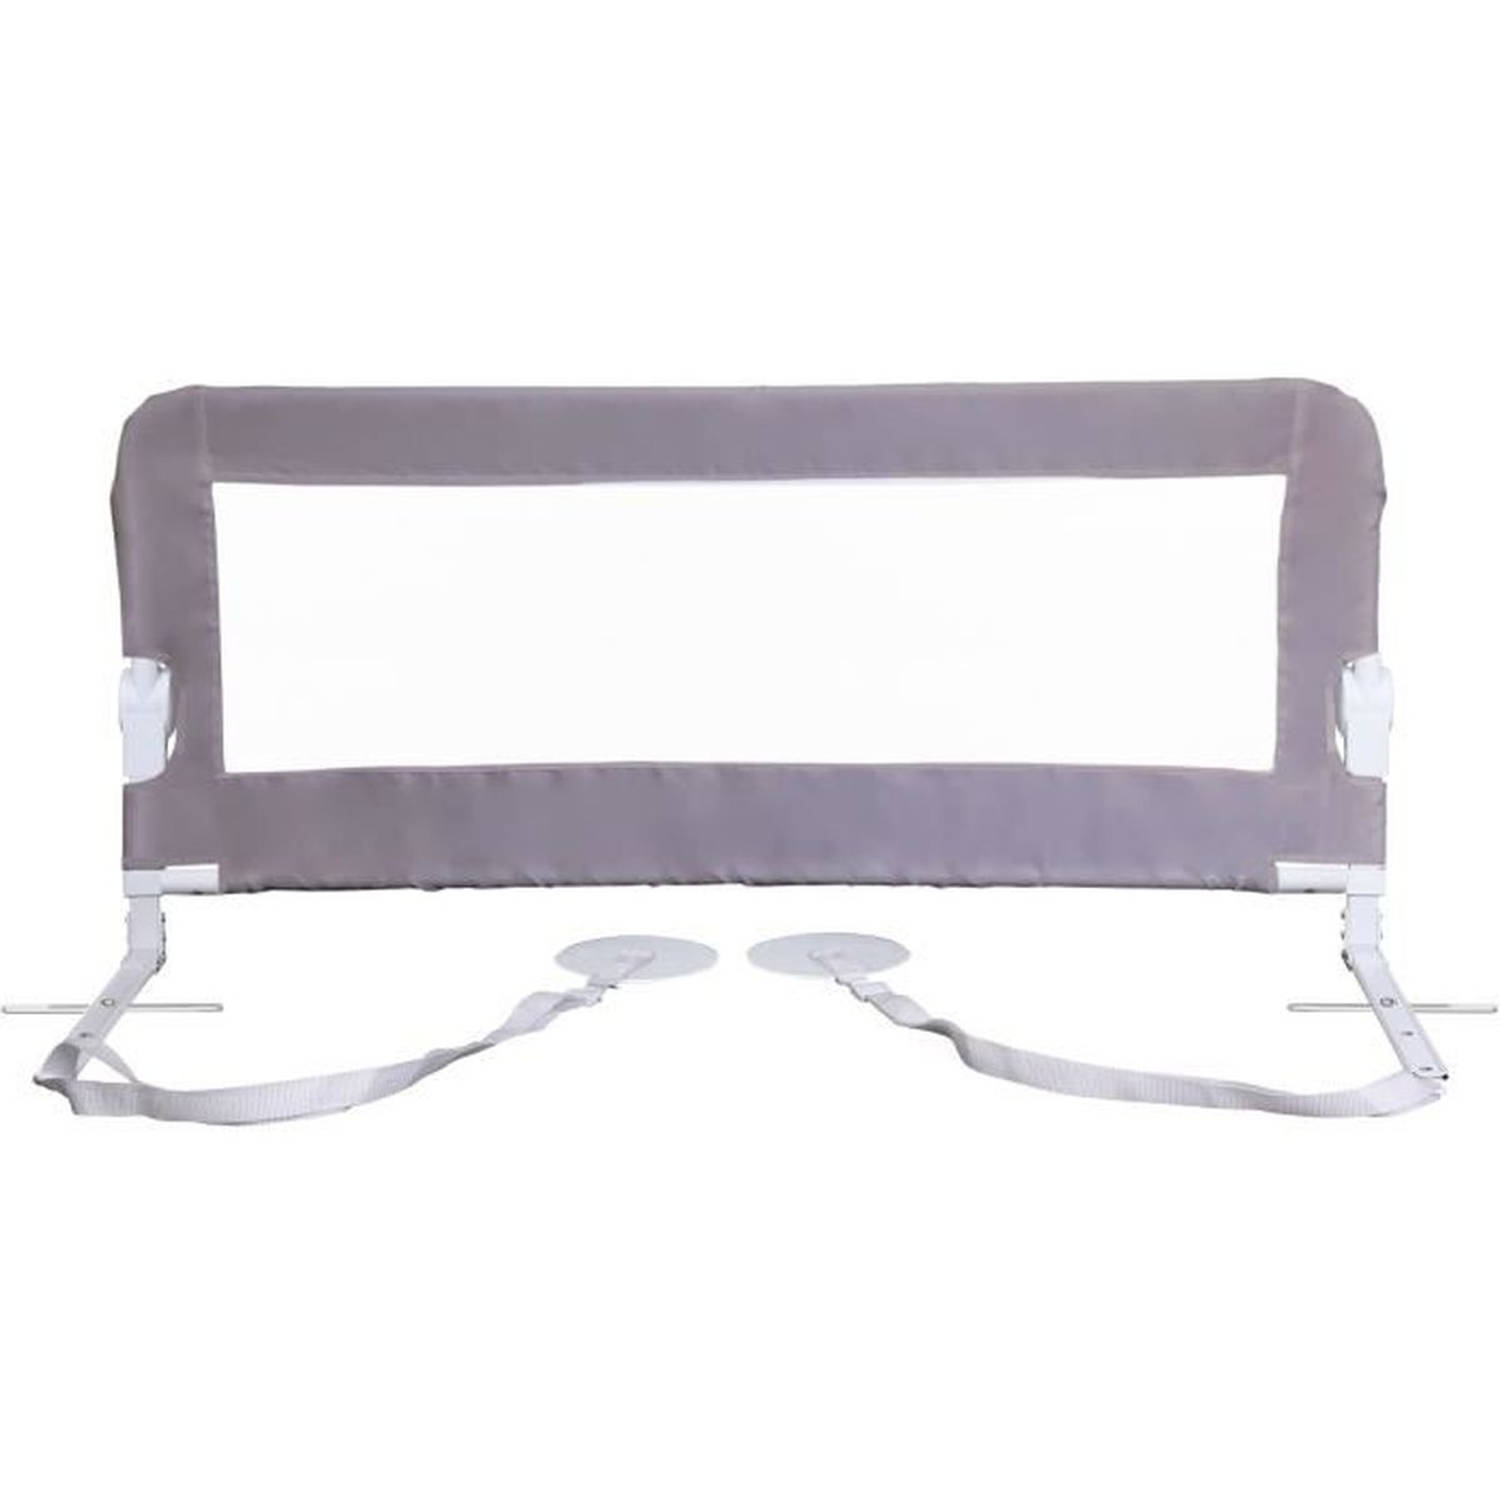 DreamBaby Nicole Bed Barriere Bedden en platte bedden meten van 150 cm breed en 50 cm hoog grijs